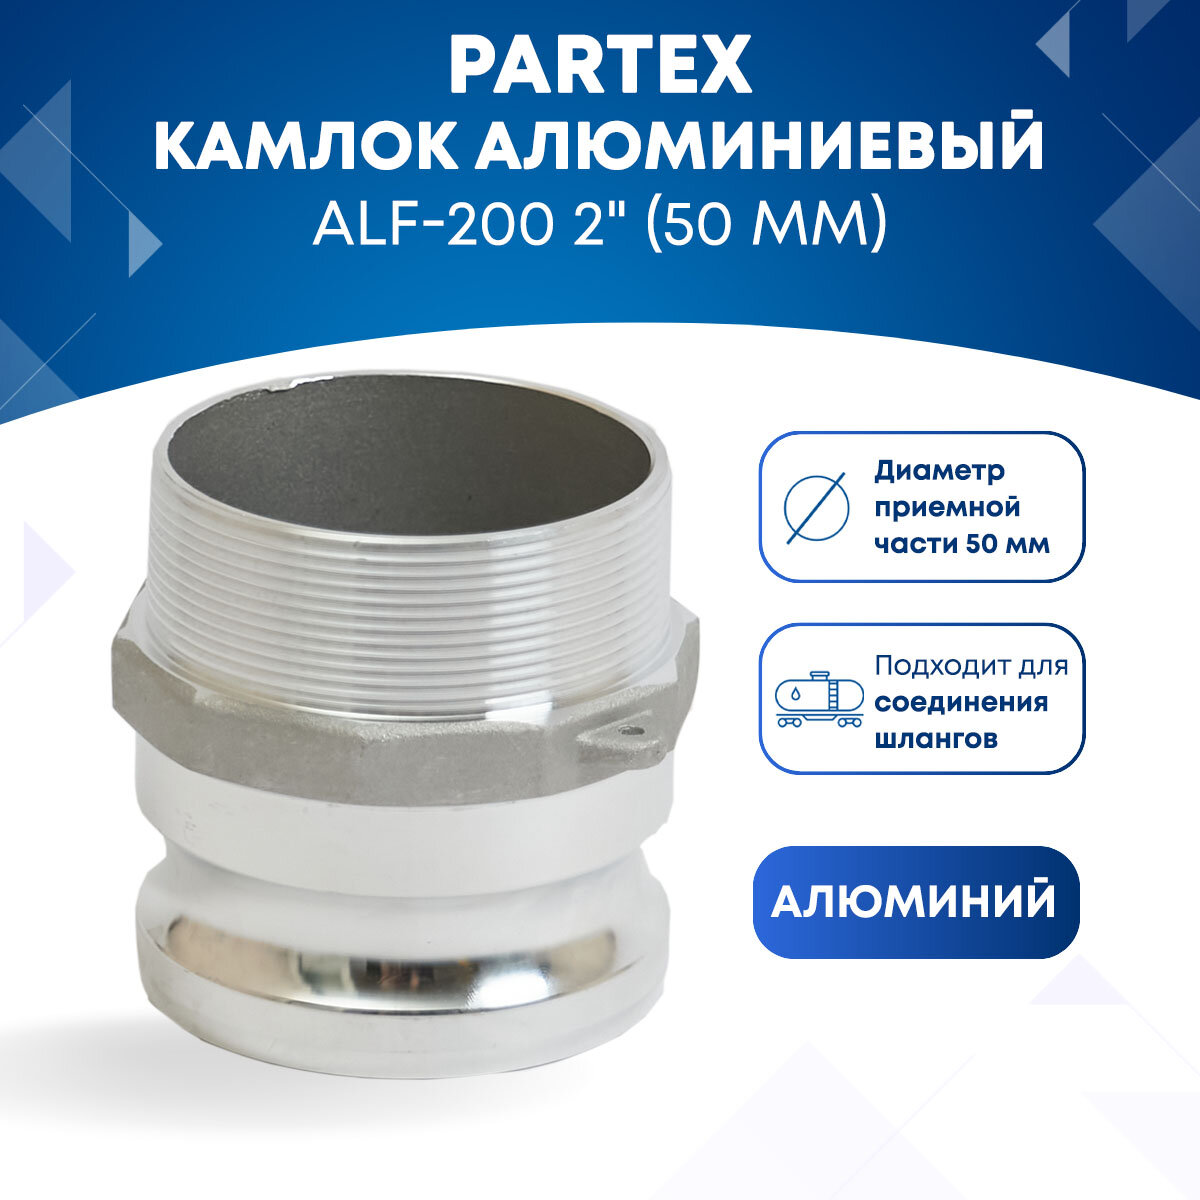 Камлок алюминиевый ALF-200 2" (50 мм)